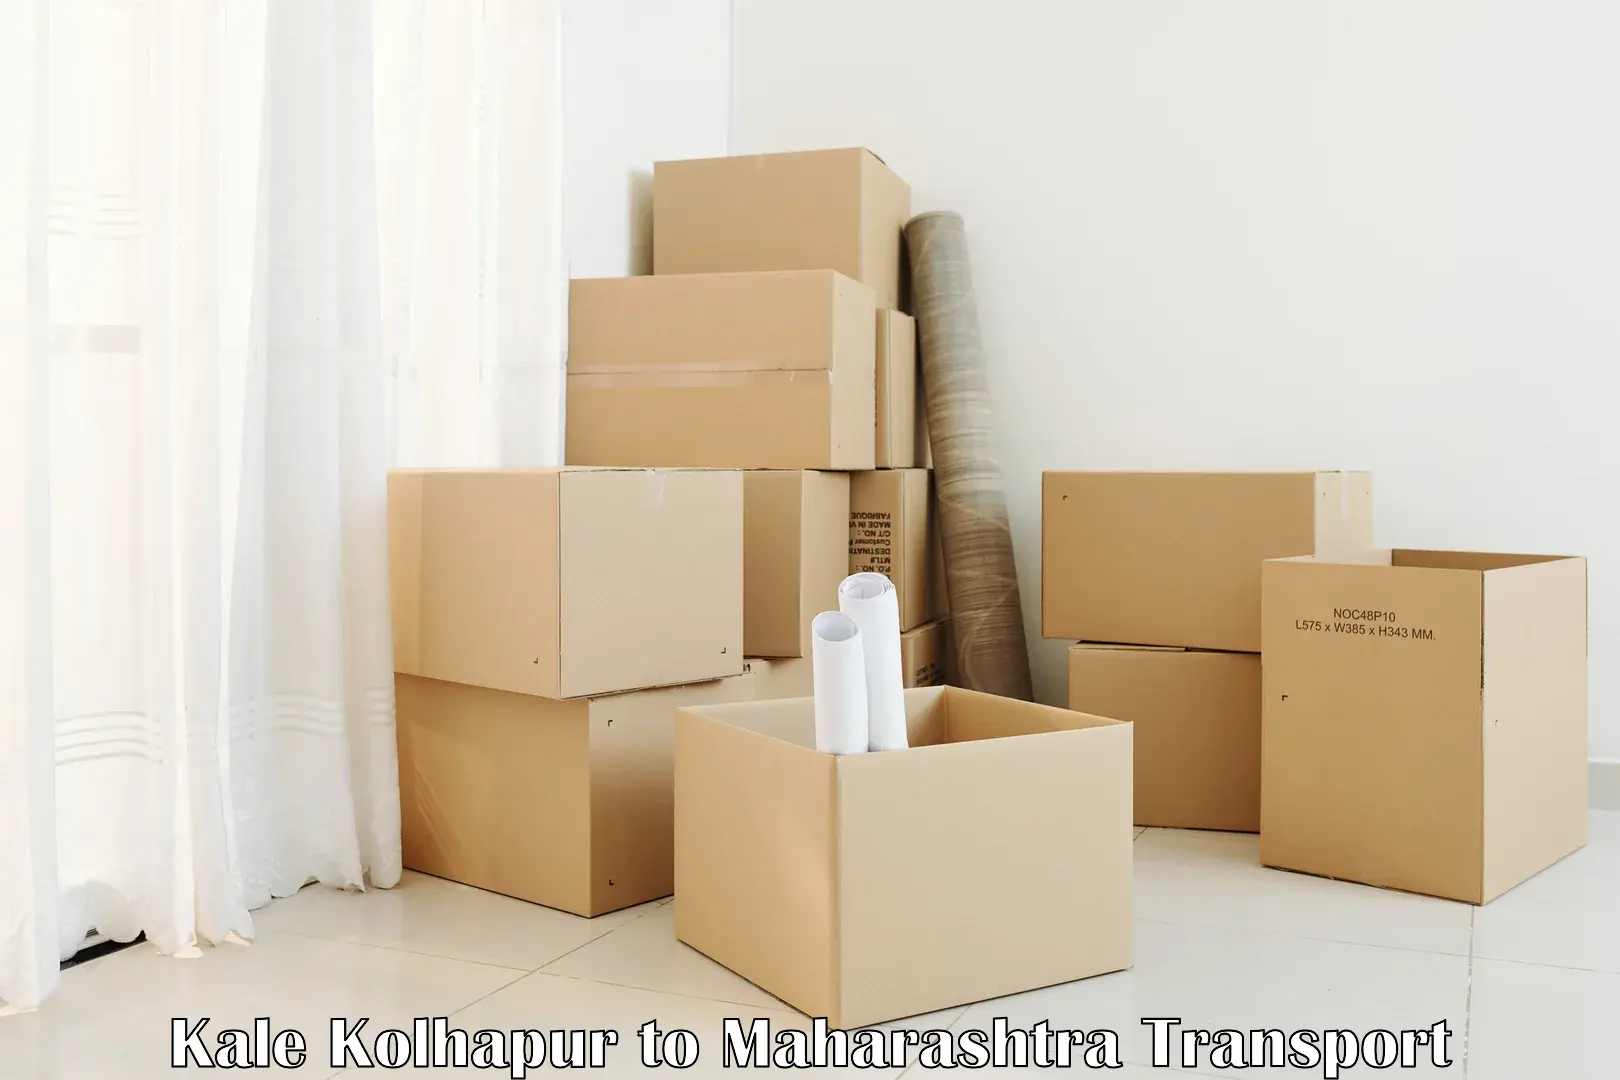 Furniture transport service in Kale Kolhapur to Lasalgaon